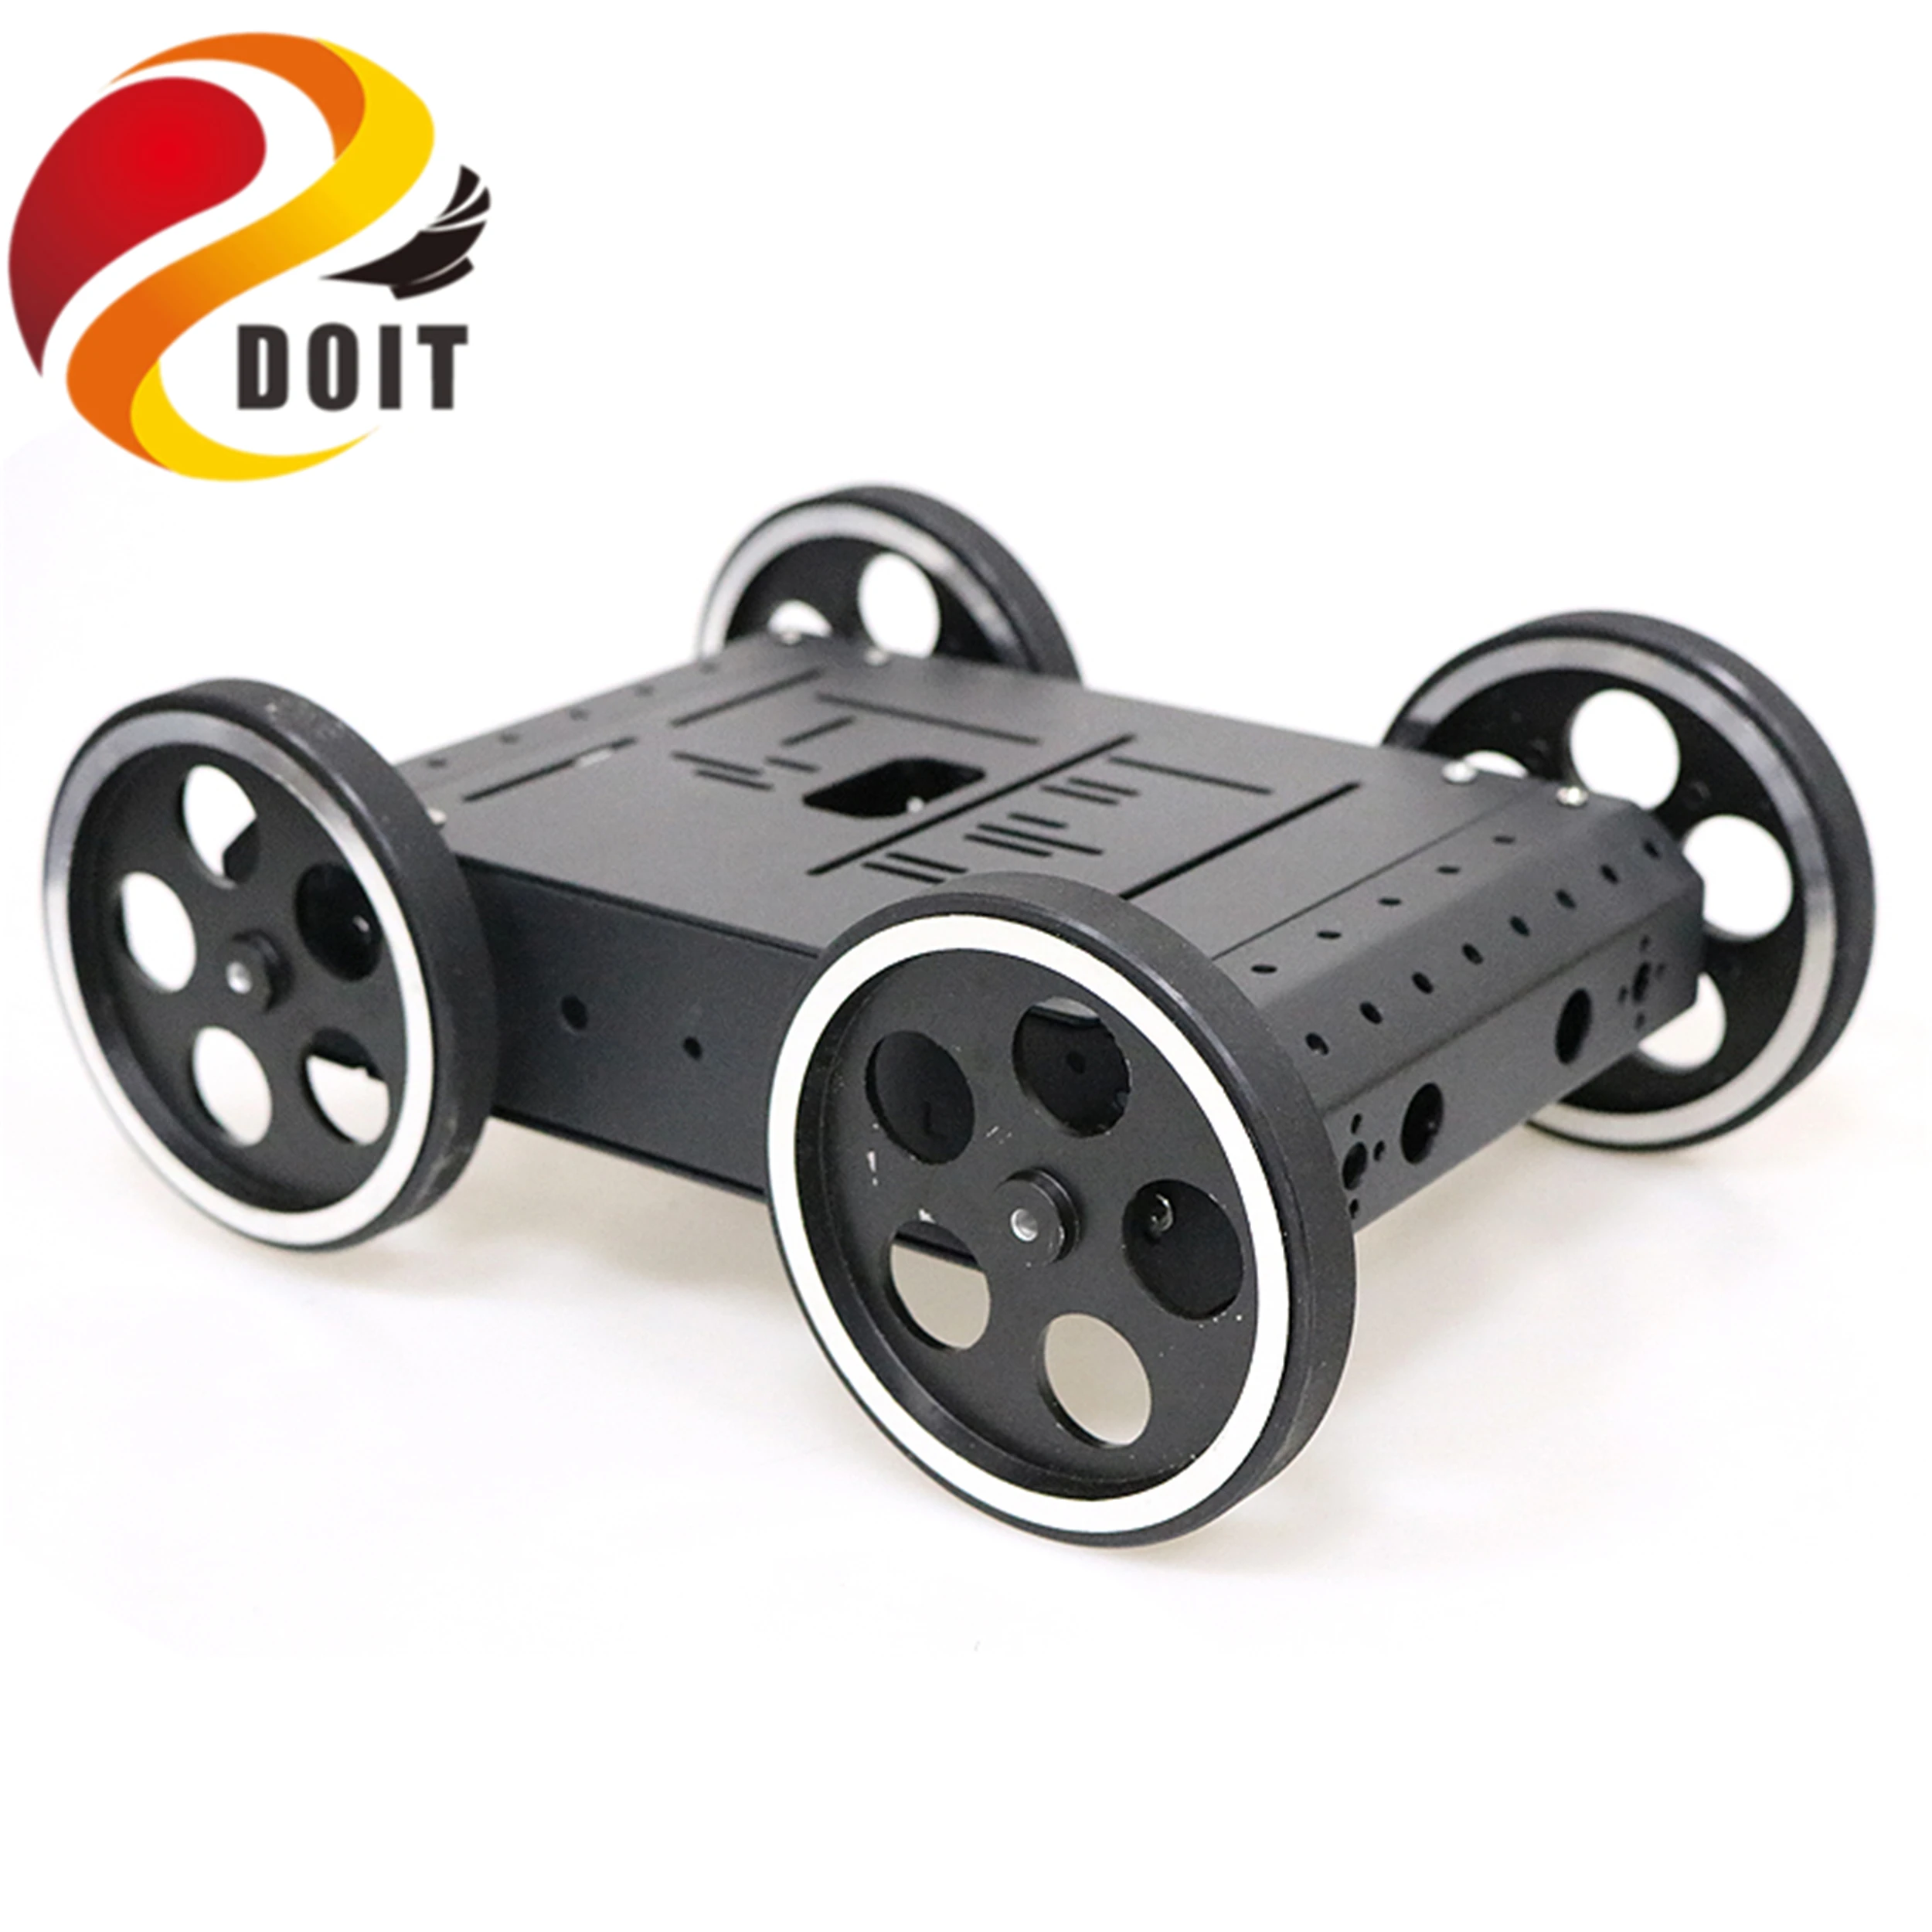 SZDOIT 9 кг нагрузка C3 4WD алюминиевый сплав умный робот шасси автомобиля Комплект с 12V двигатели металлические колеса DIY для Arduino